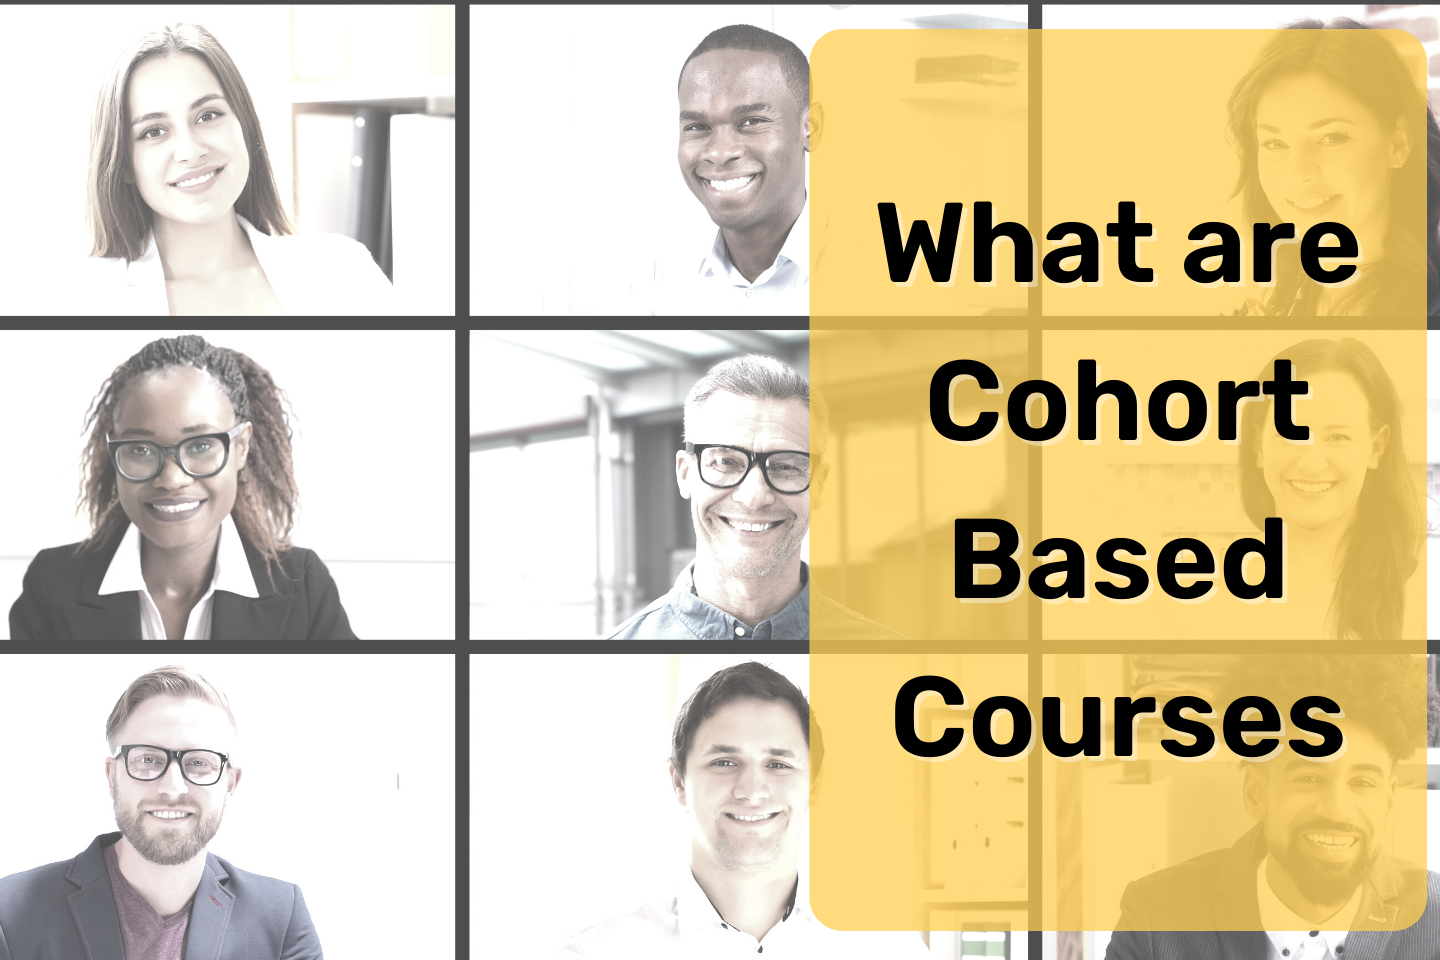 Cohort Course